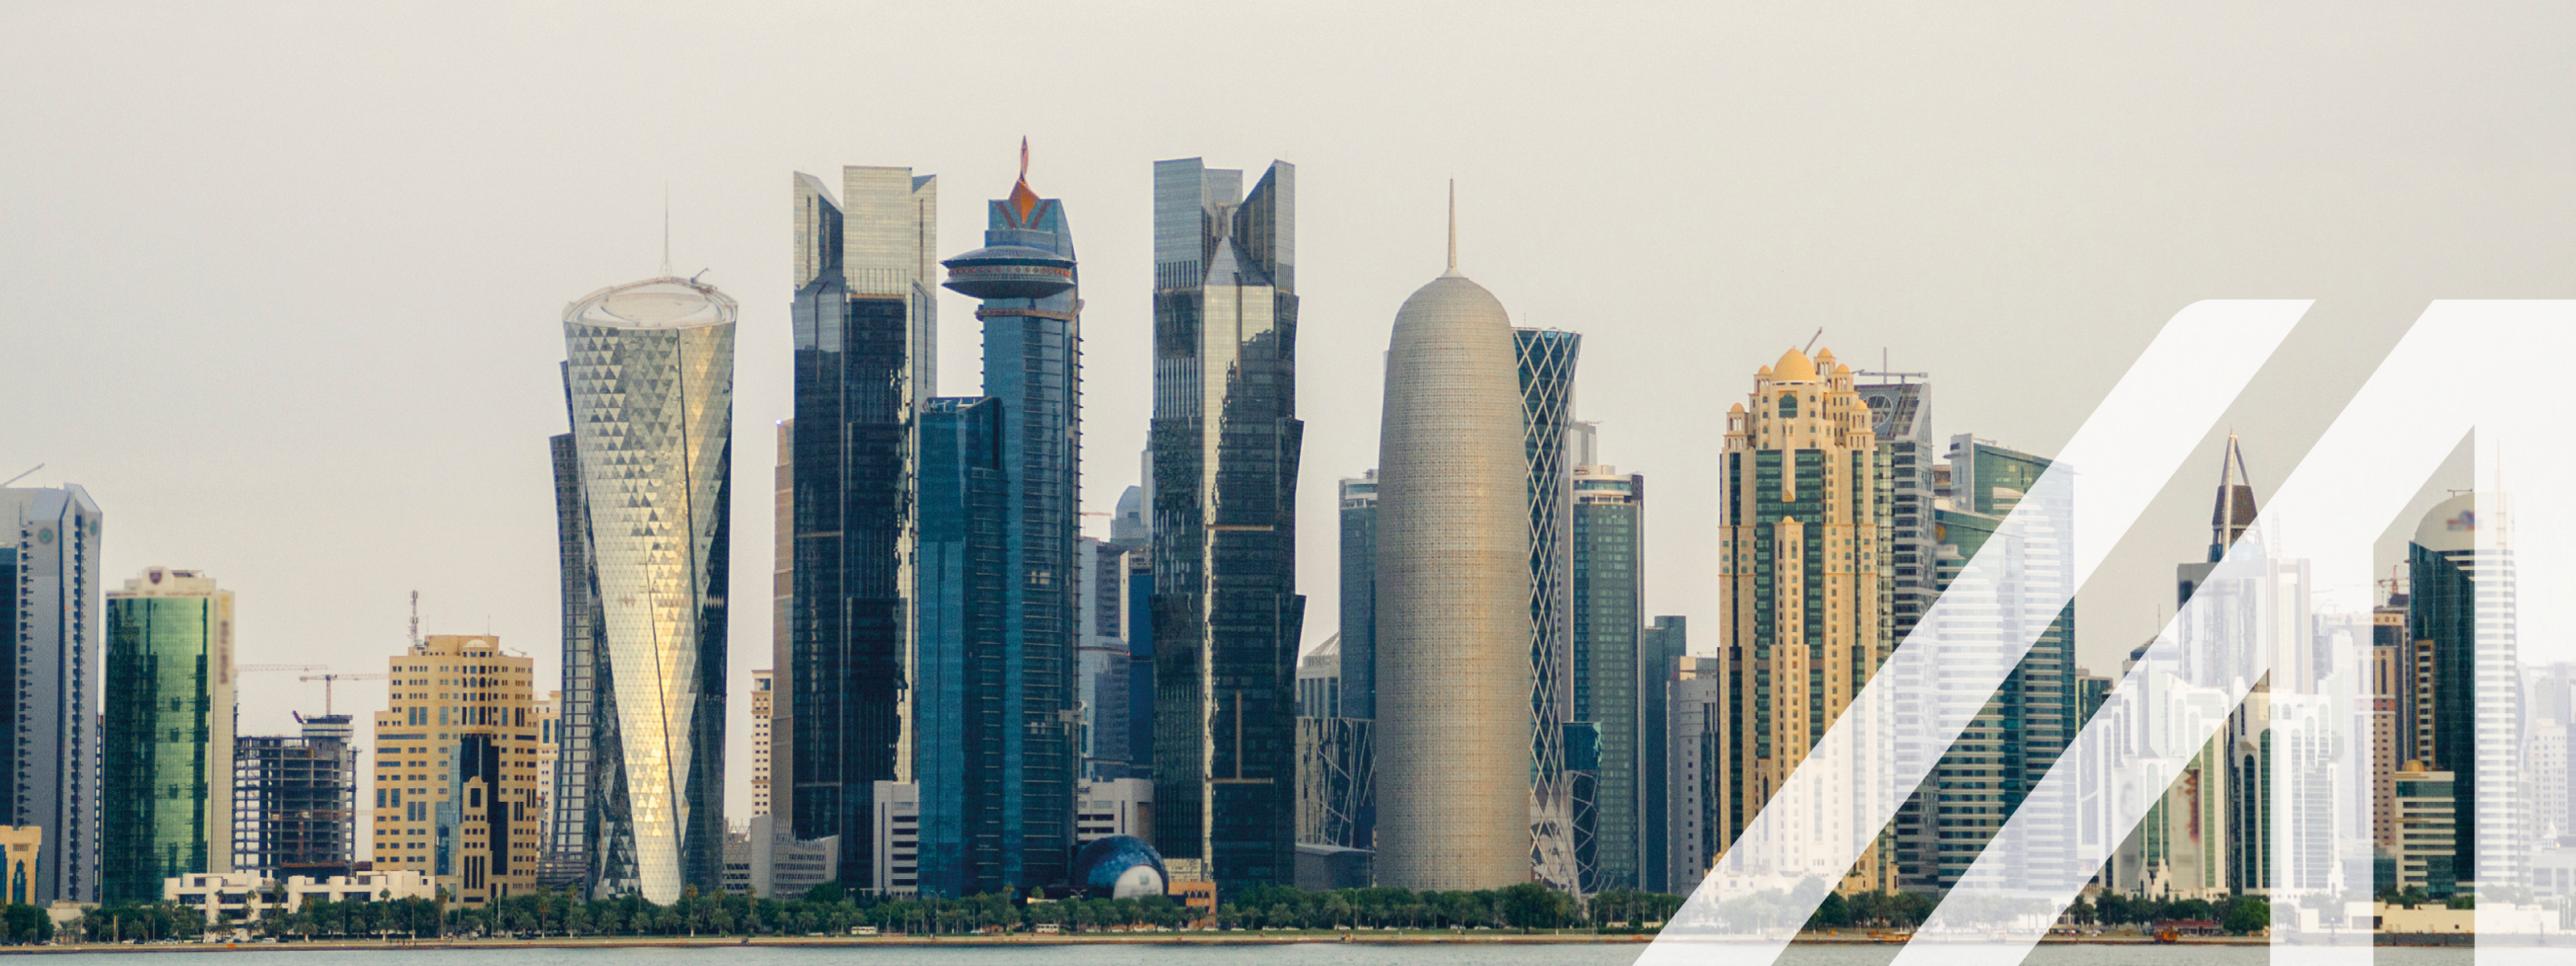 Blick auf die Corniche von Doha in West Bay, mit vielen modernen Wolkenkratzern, wolkenverhangener Himmel
